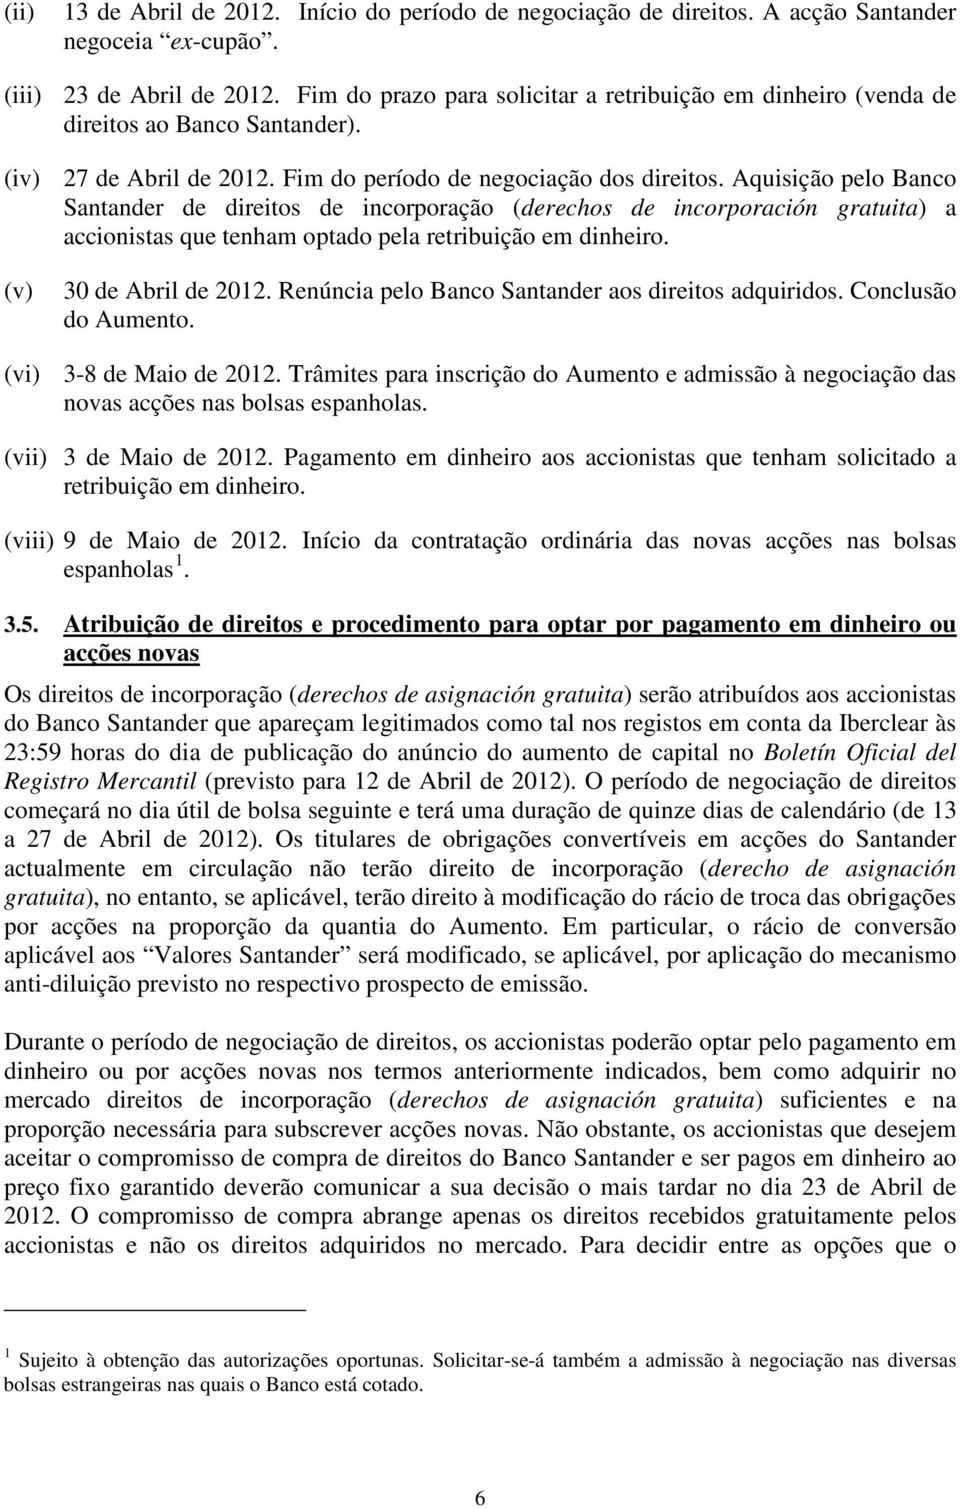 Aquisição pelo Banco Santander de direitos de incorporação (derechos de incorporación gratuita) a accionistas que tenham optado pela retribuição em dinheiro. (v) 30 de Abril de 2012.